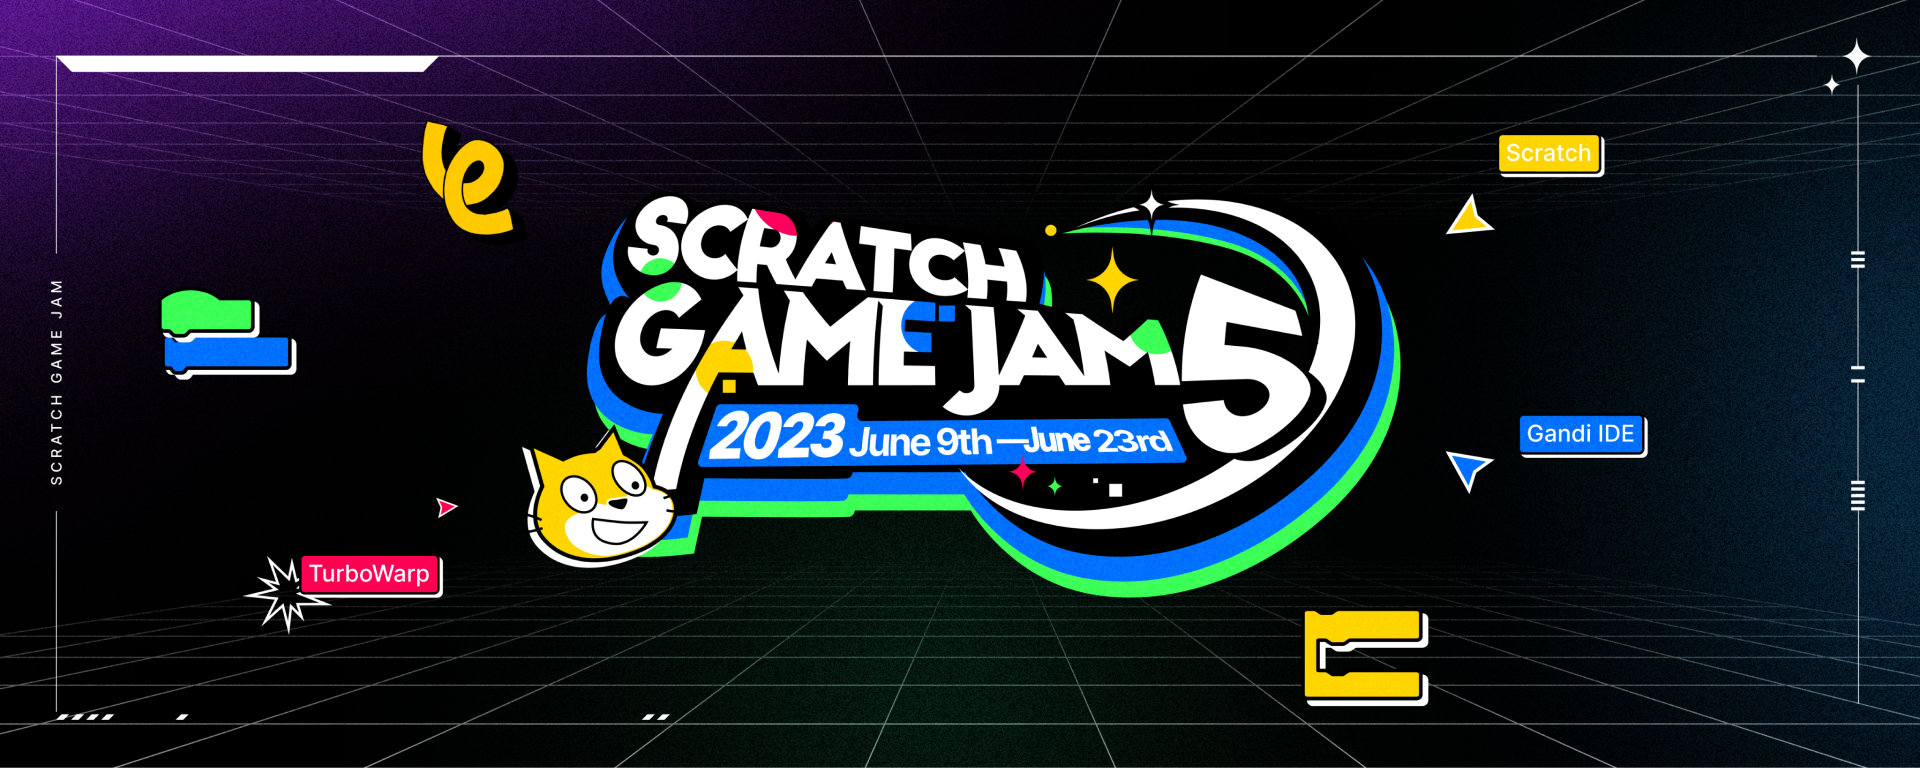 Scratch Game Jam #5